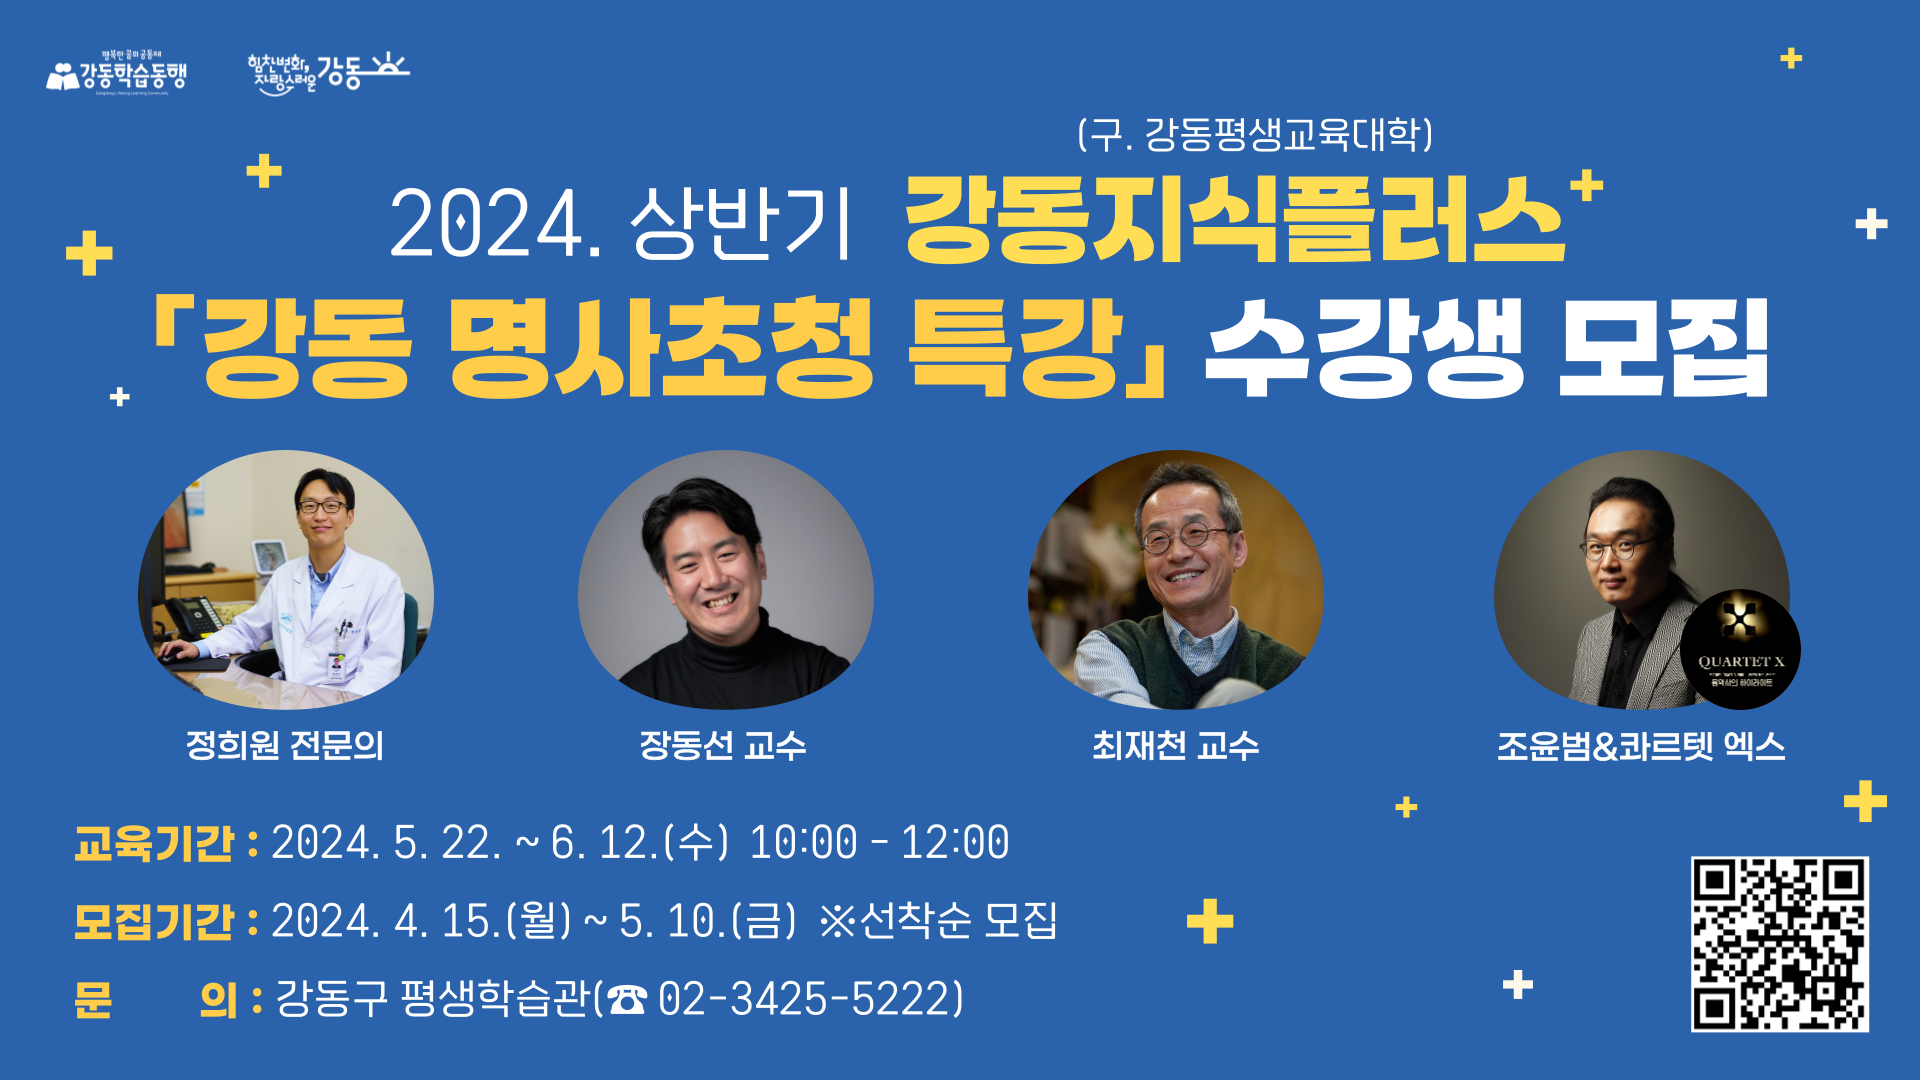 2024. 상반기 강동지식플러스(구. 강동평생교육대학) 「강동 명사초청 특강」